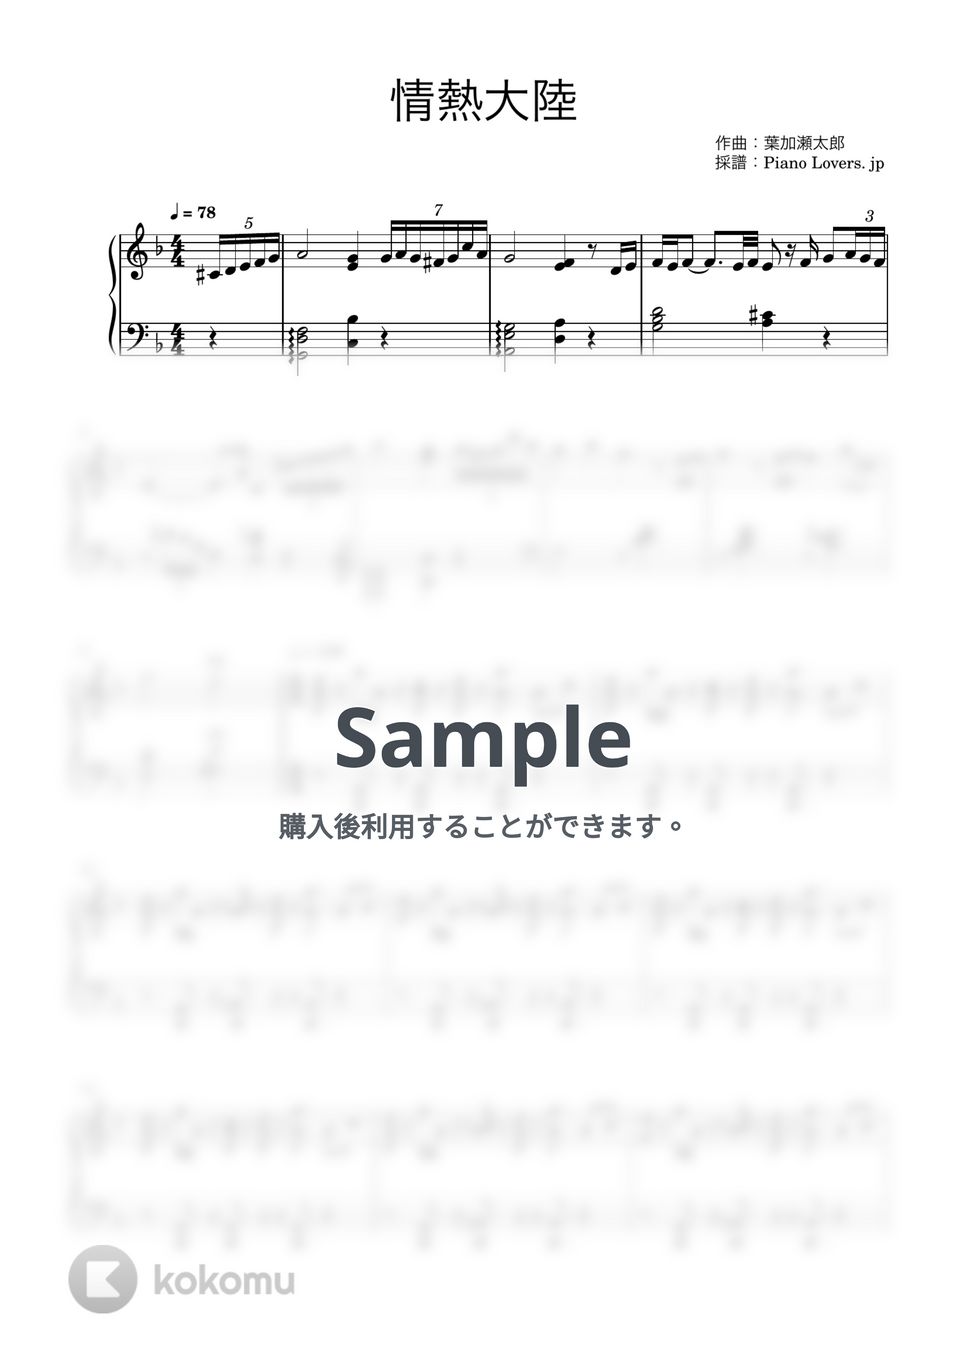 葉加瀬太郎 - 情熱大陸(手が小さくても弾ける) (手の小さい方向け / ピアノ楽譜 / 中級) by Piano Lovers. jp